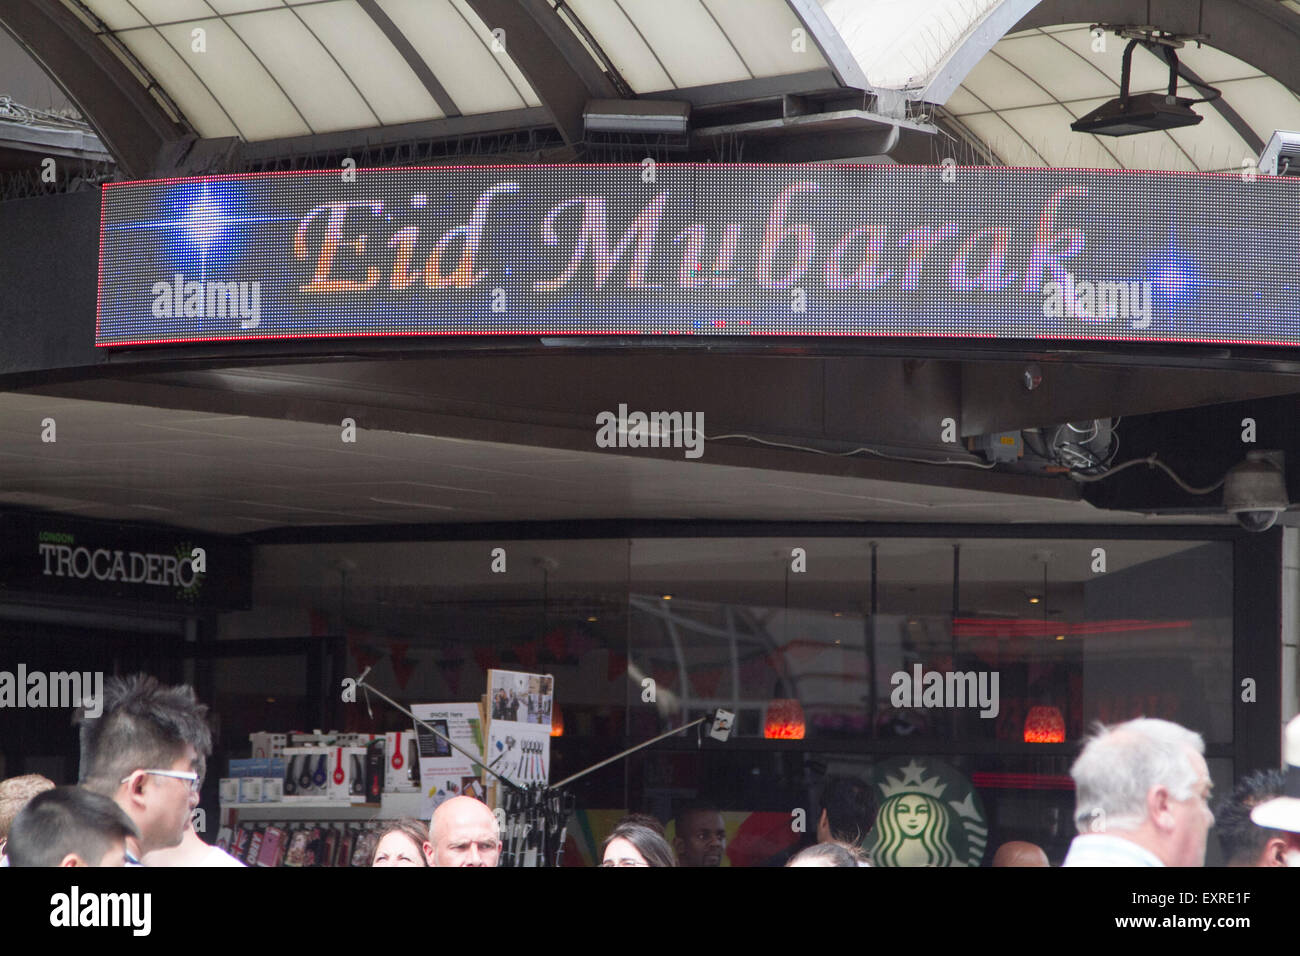 Piccadilly London, UK. 16. Juli 2015. Eine elektronische Unterschrift auf dem London Trocadero blinkt Eid Mubarak, wie Muslime bereiten Sie bis zum Ende des Heiligen Monats Ramadan und Fasten Credit feiern: Amer Ghazzal/Alamy Live-Nachrichten Stockfoto